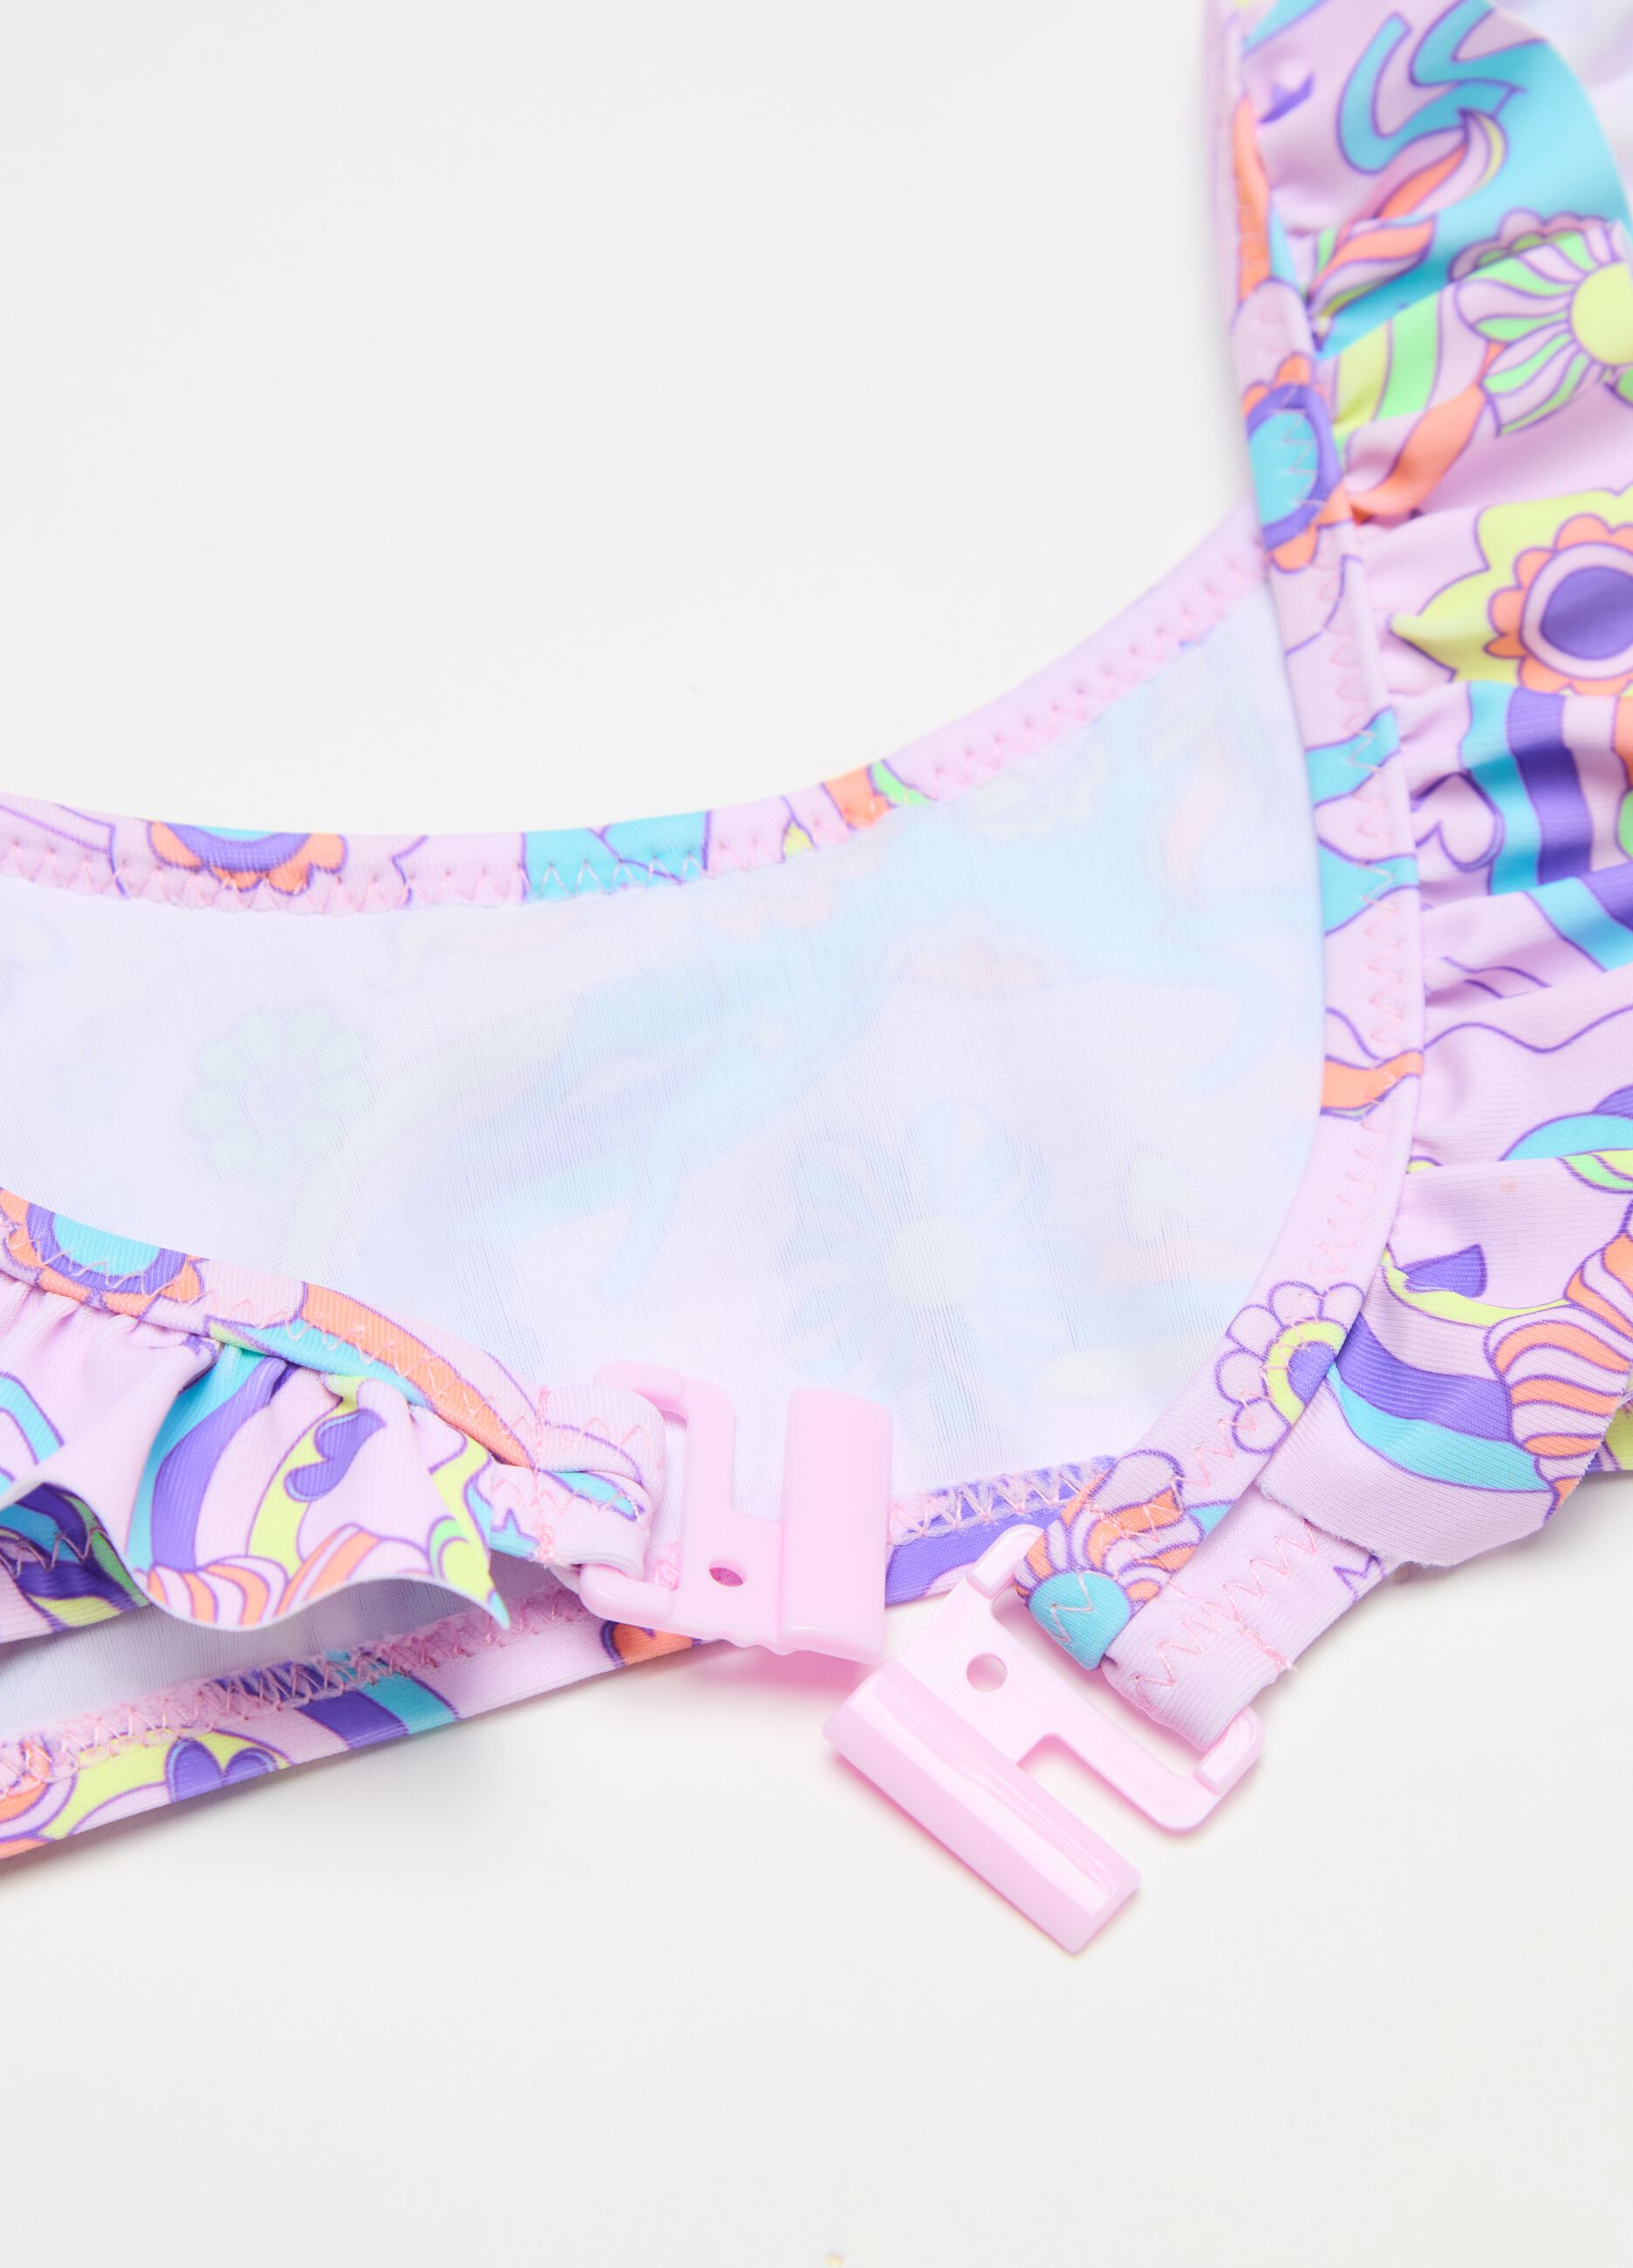 Bikini with unicorn print and frills